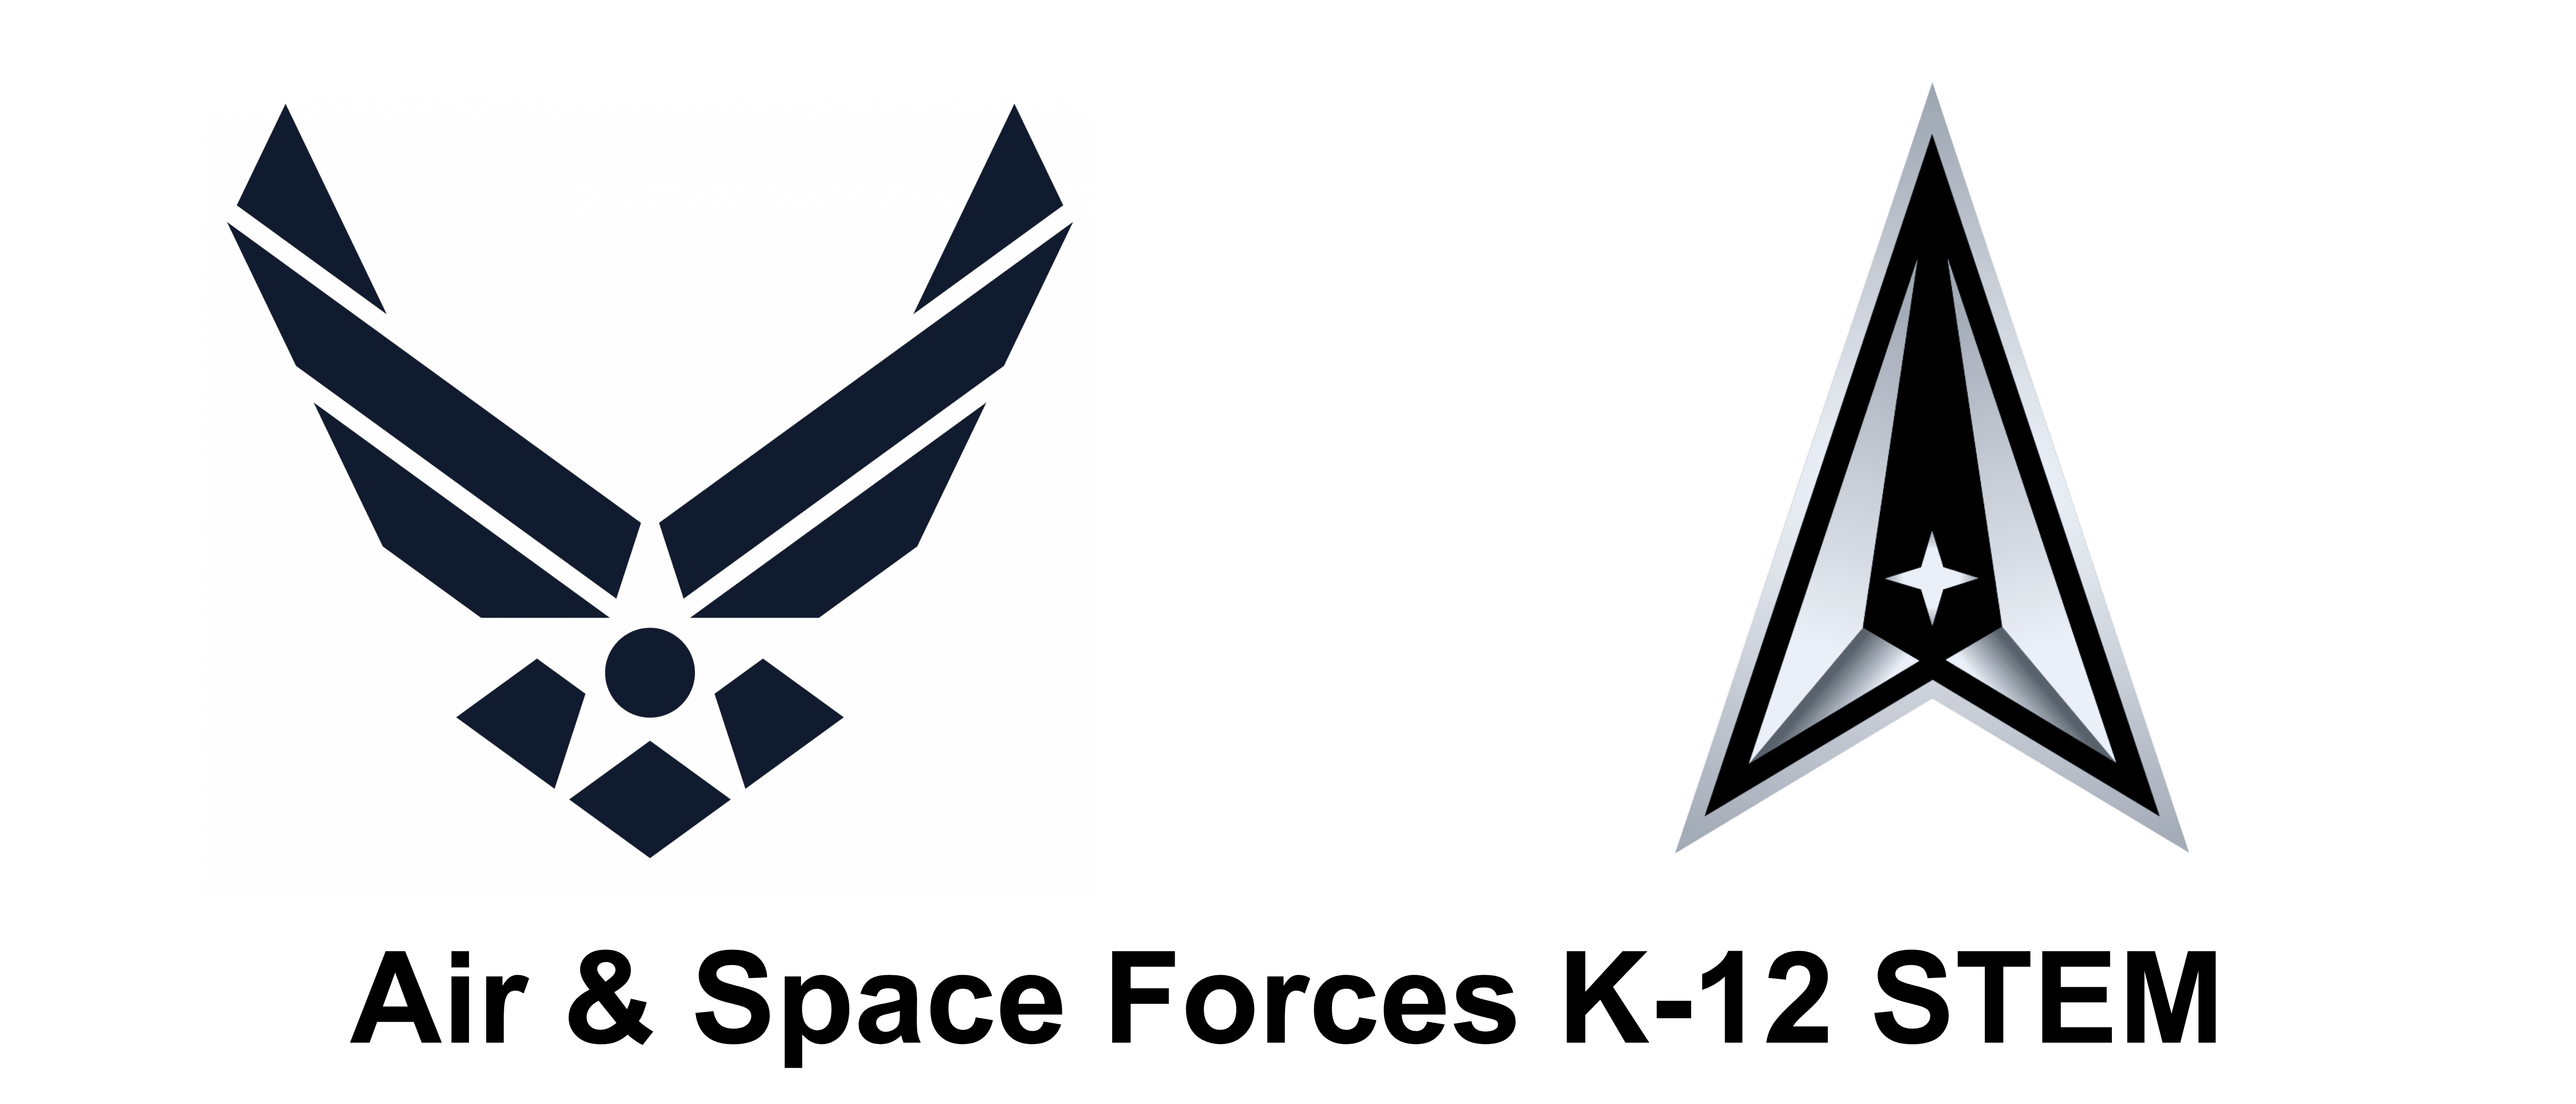 Air & Space Force K-12 STEM logo.png